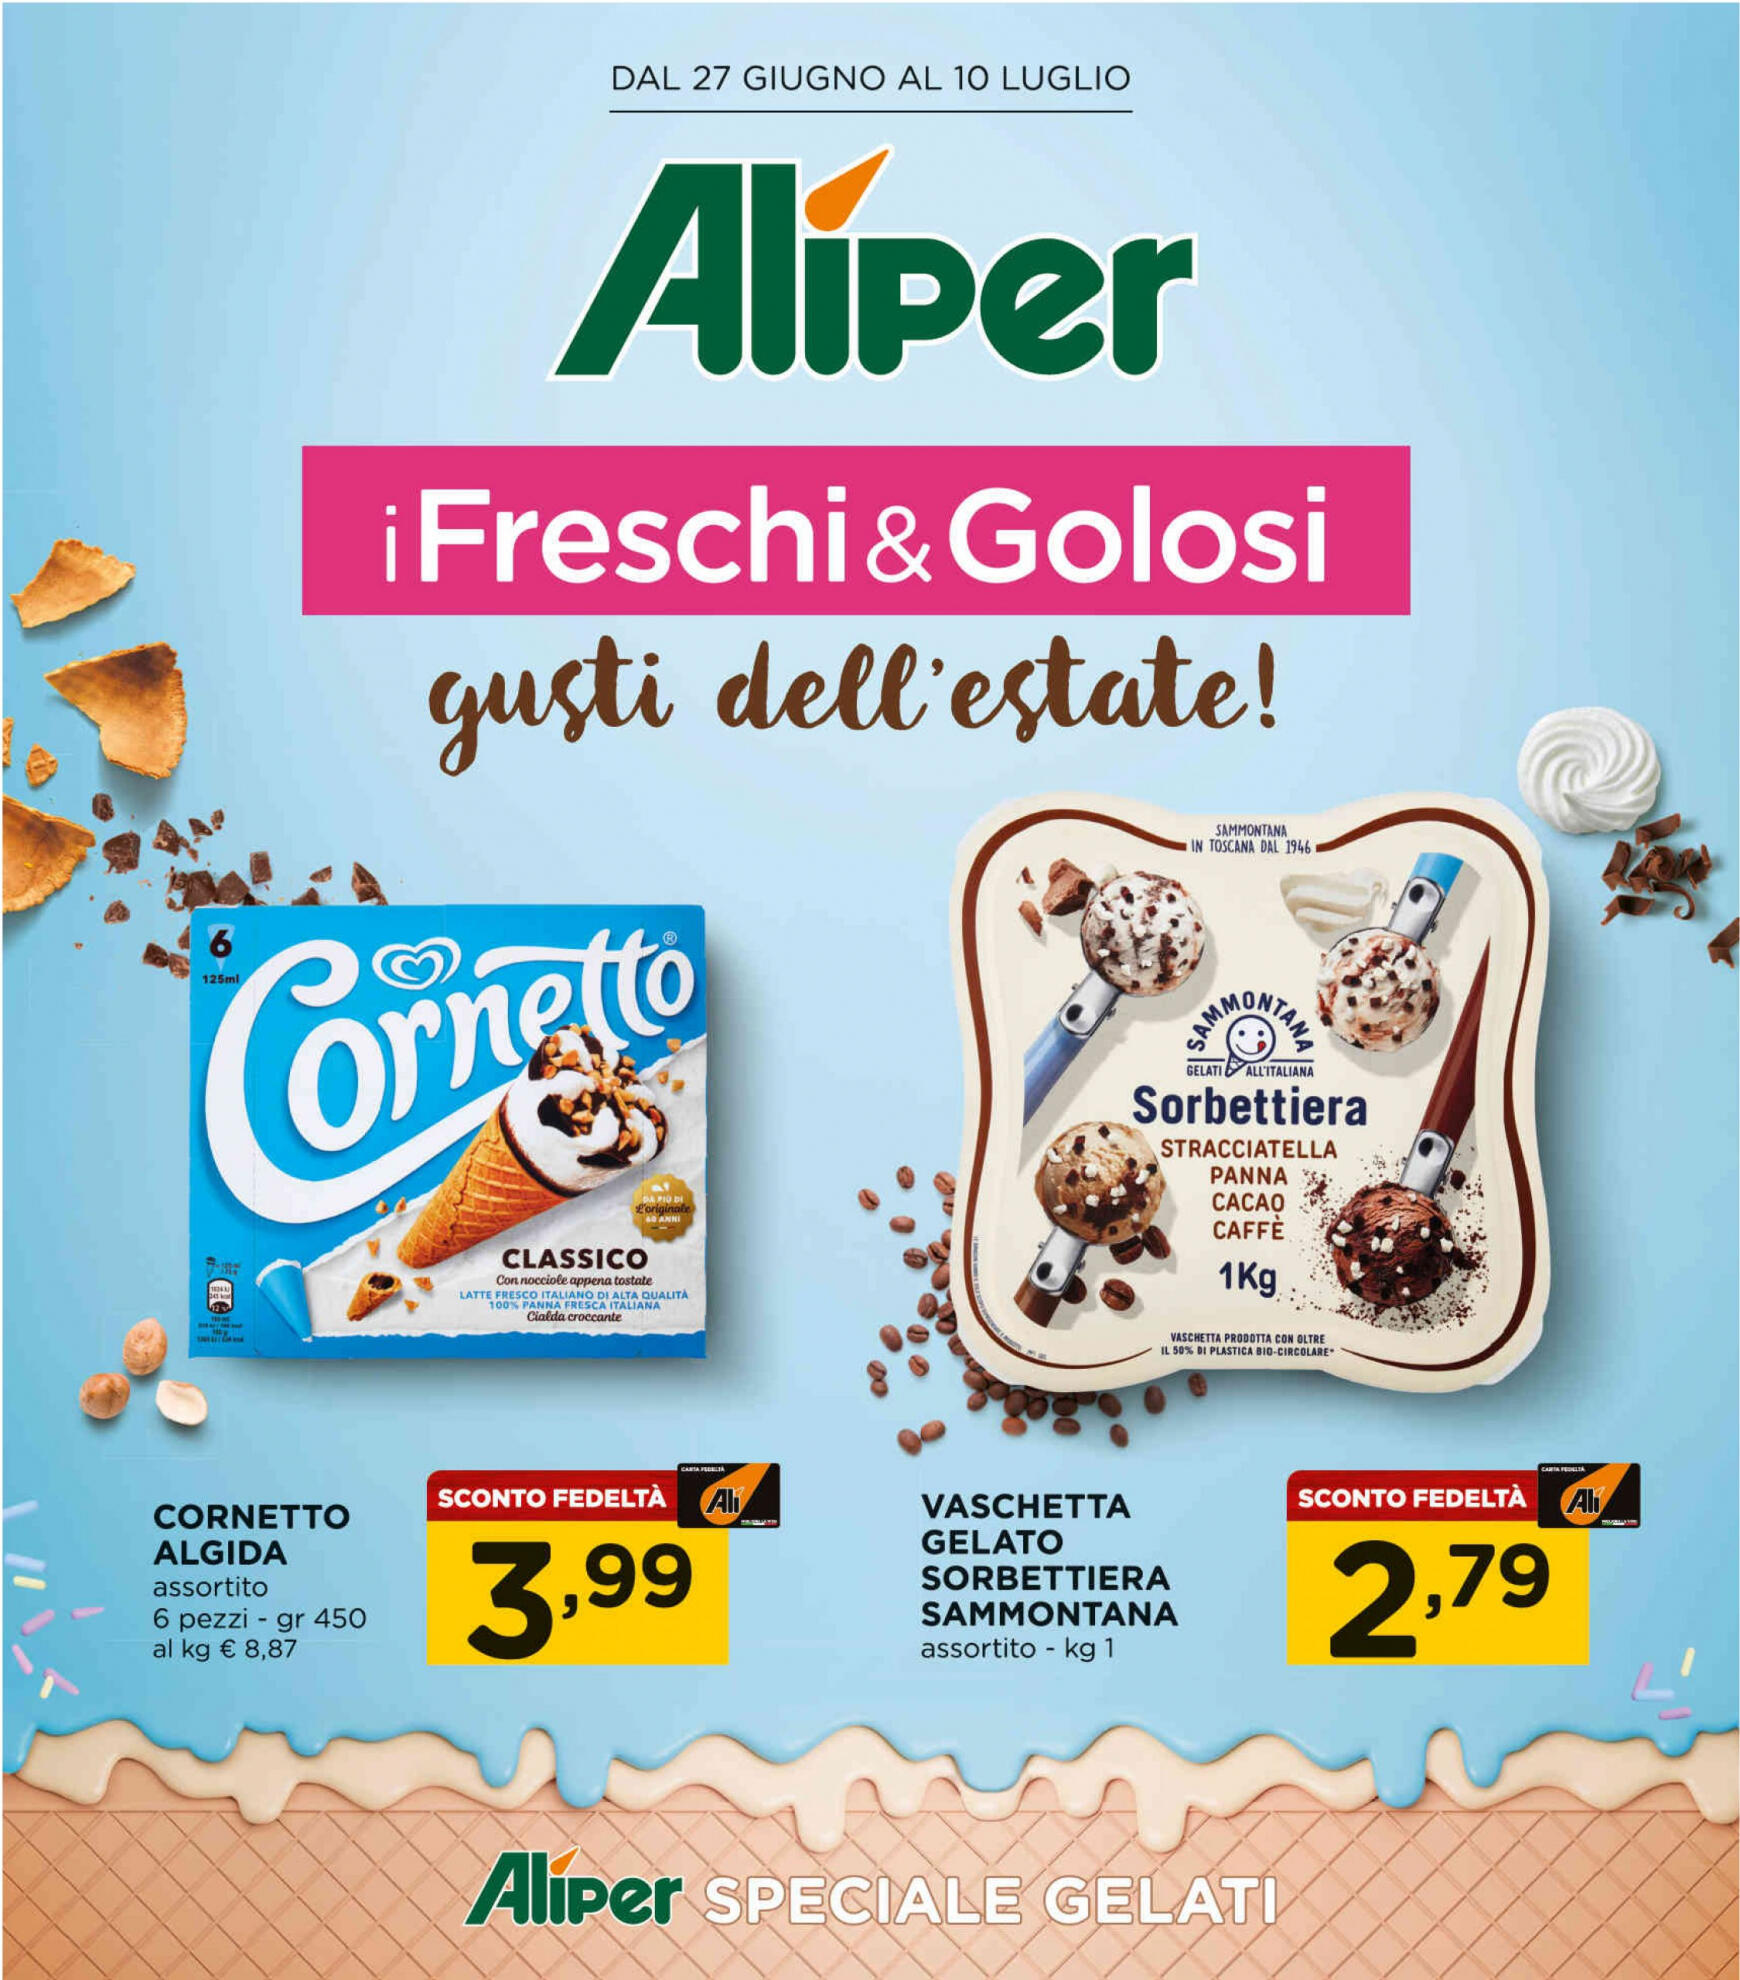 ali-aliper - Nuovo volantino Aliper - Speciale gelati 27.06. - 10.07.